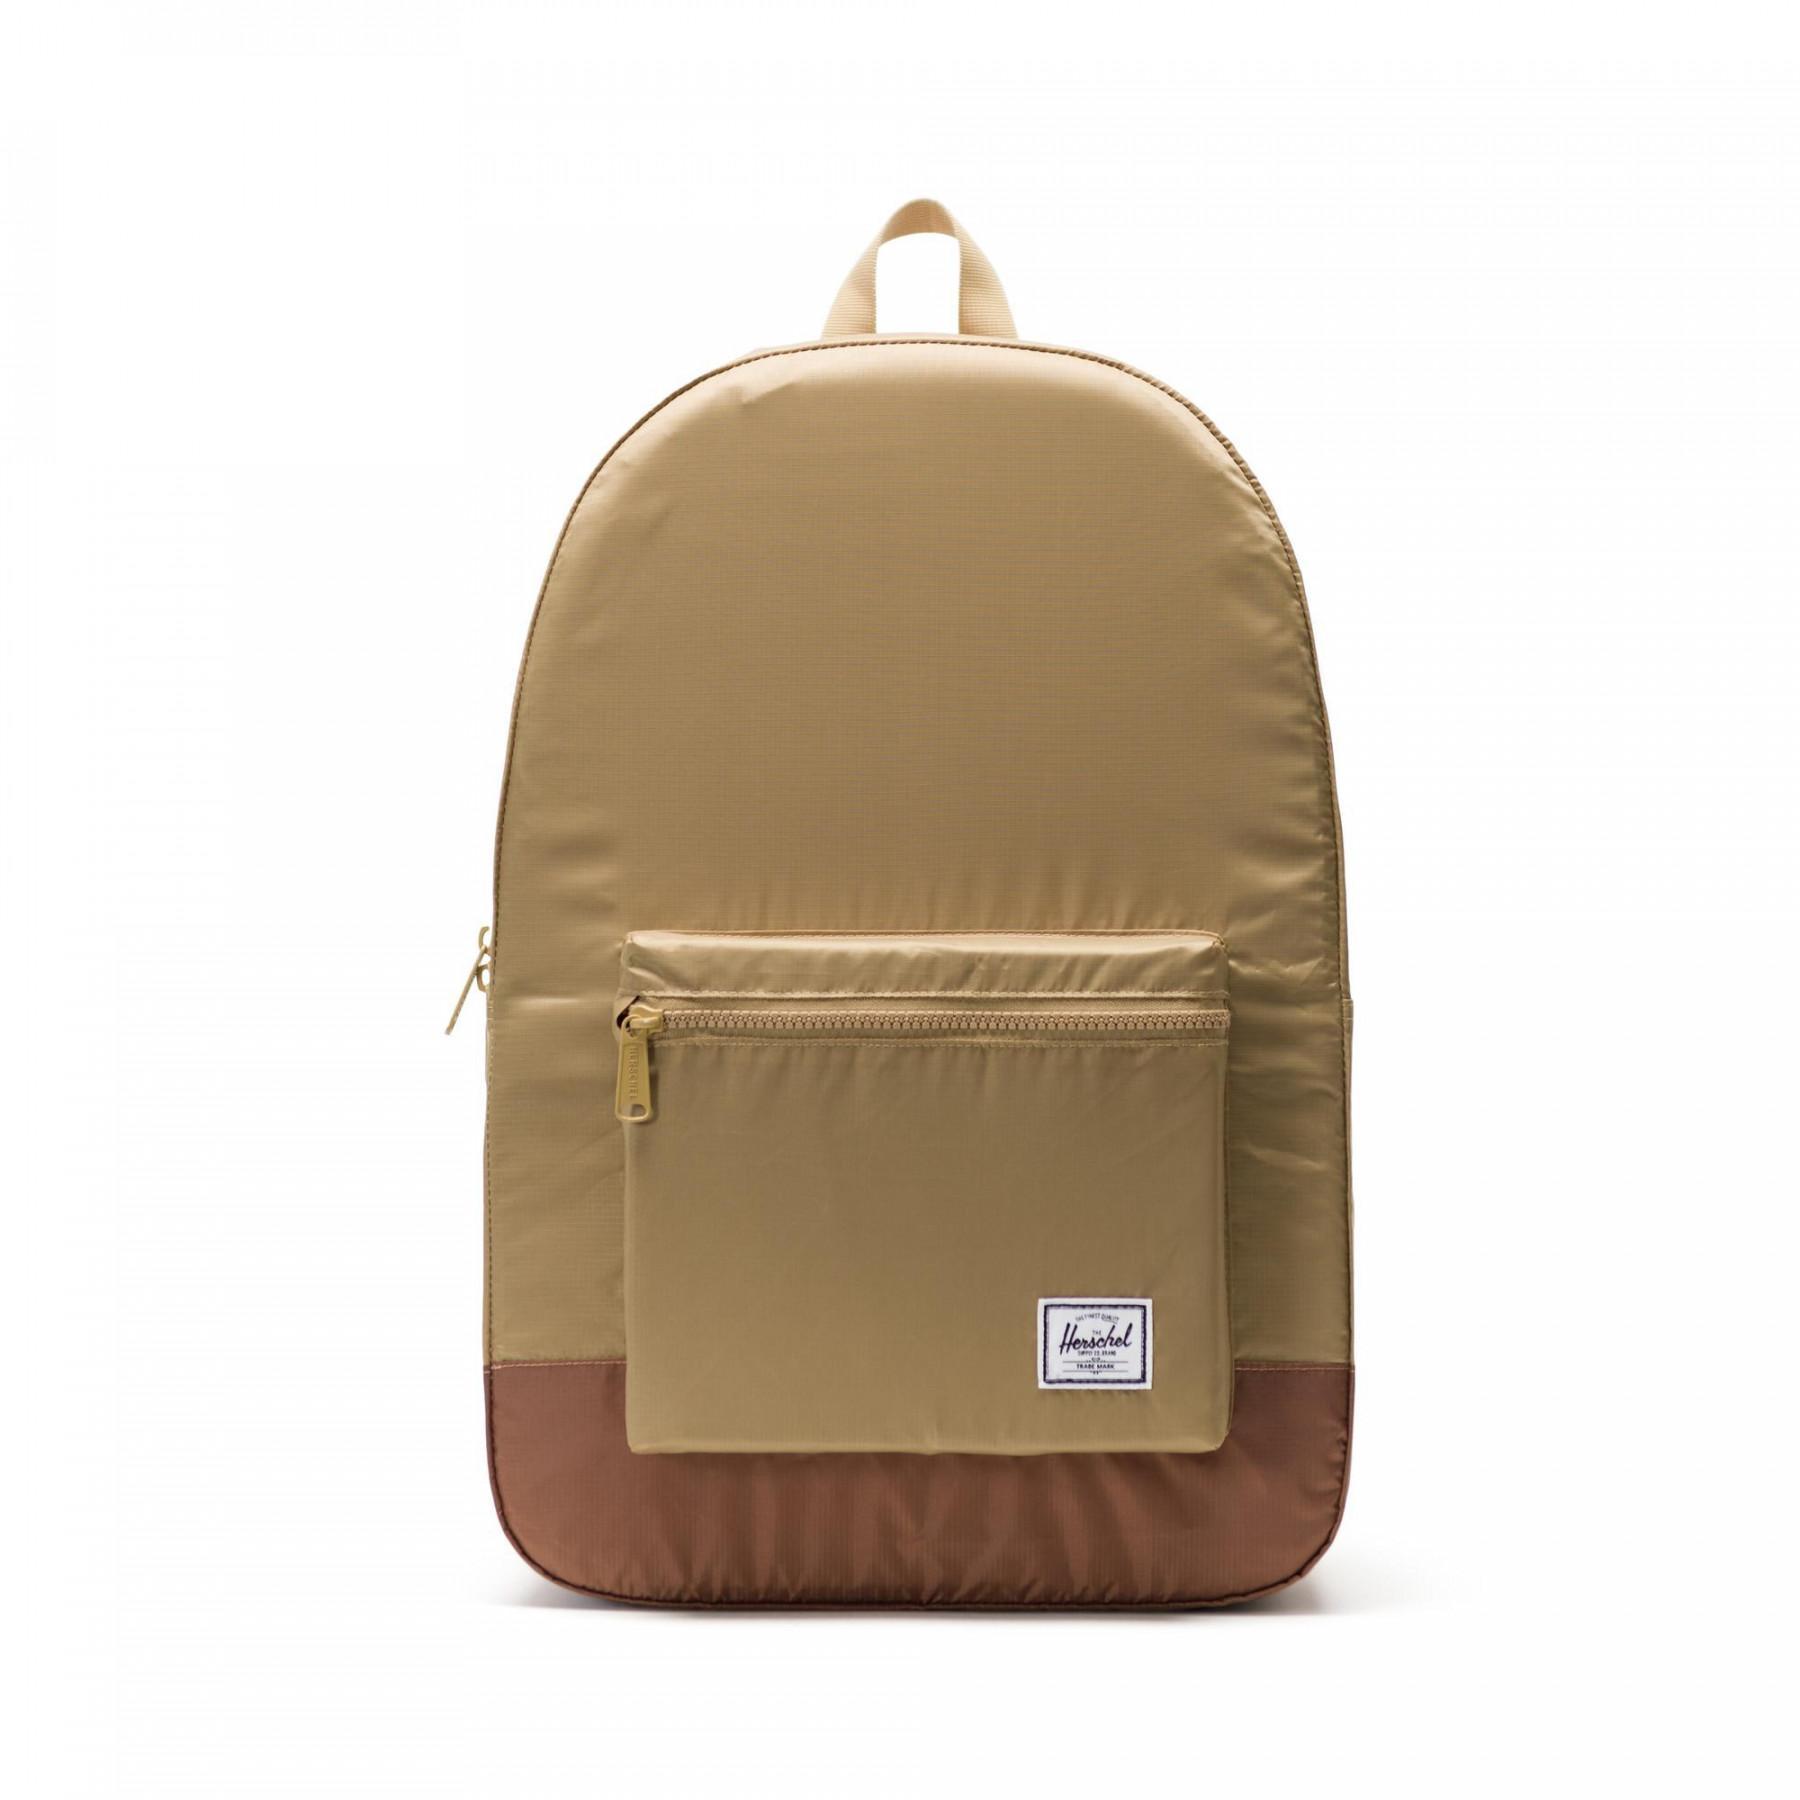 Backpack Herschel packable daypack